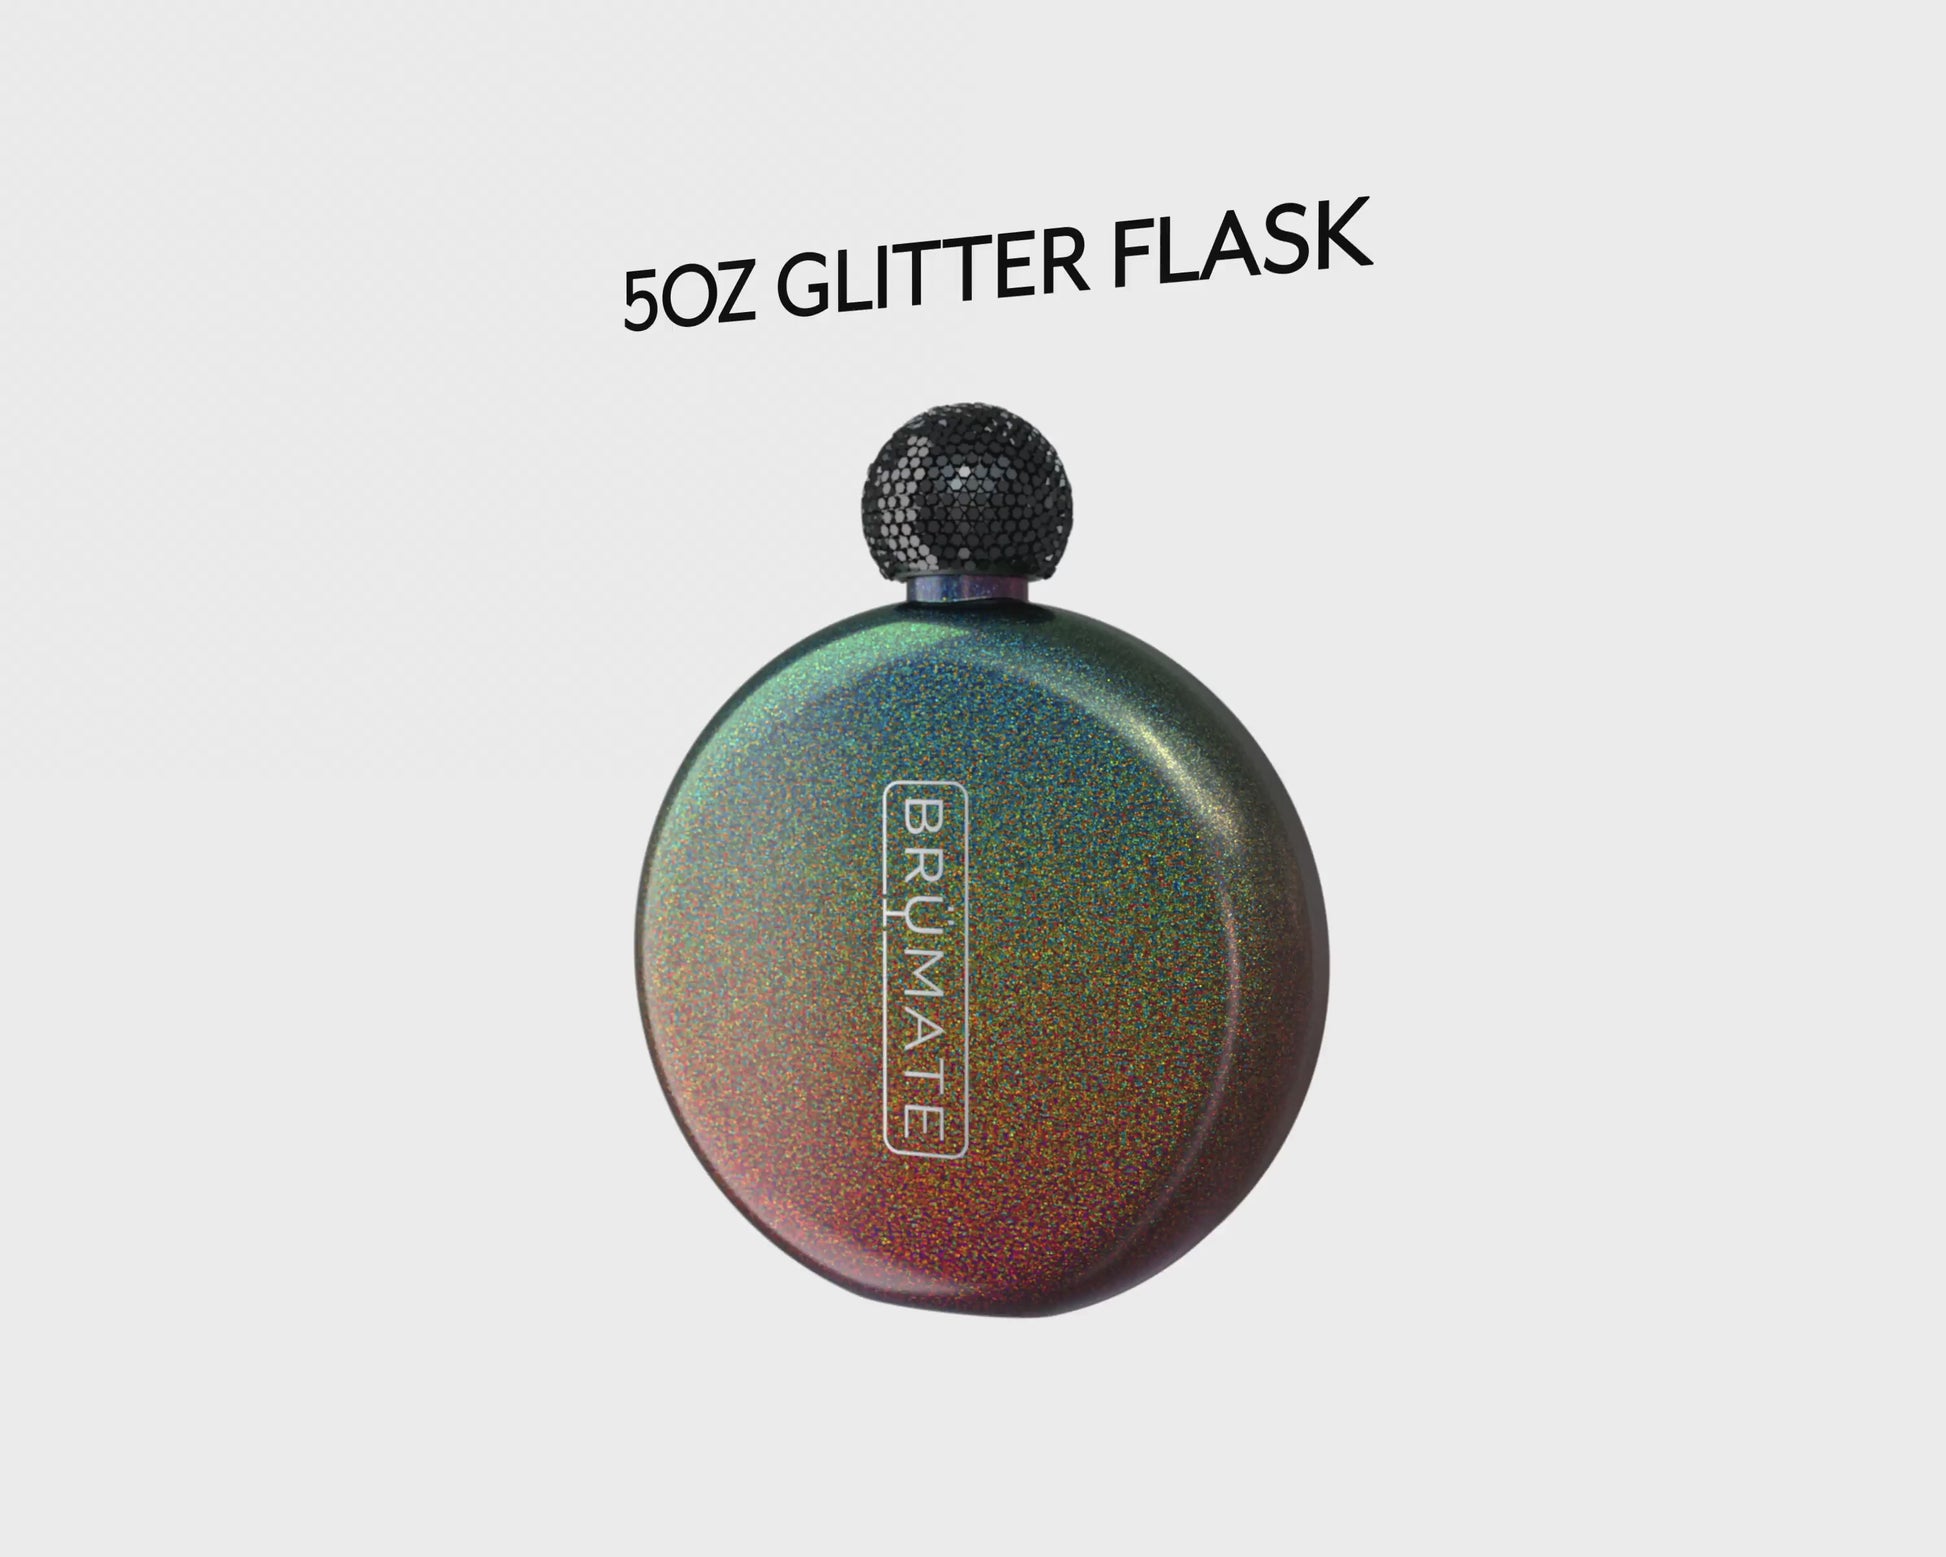 Brumate Glitter Flask 5oz - Custom Laser Engraving Available